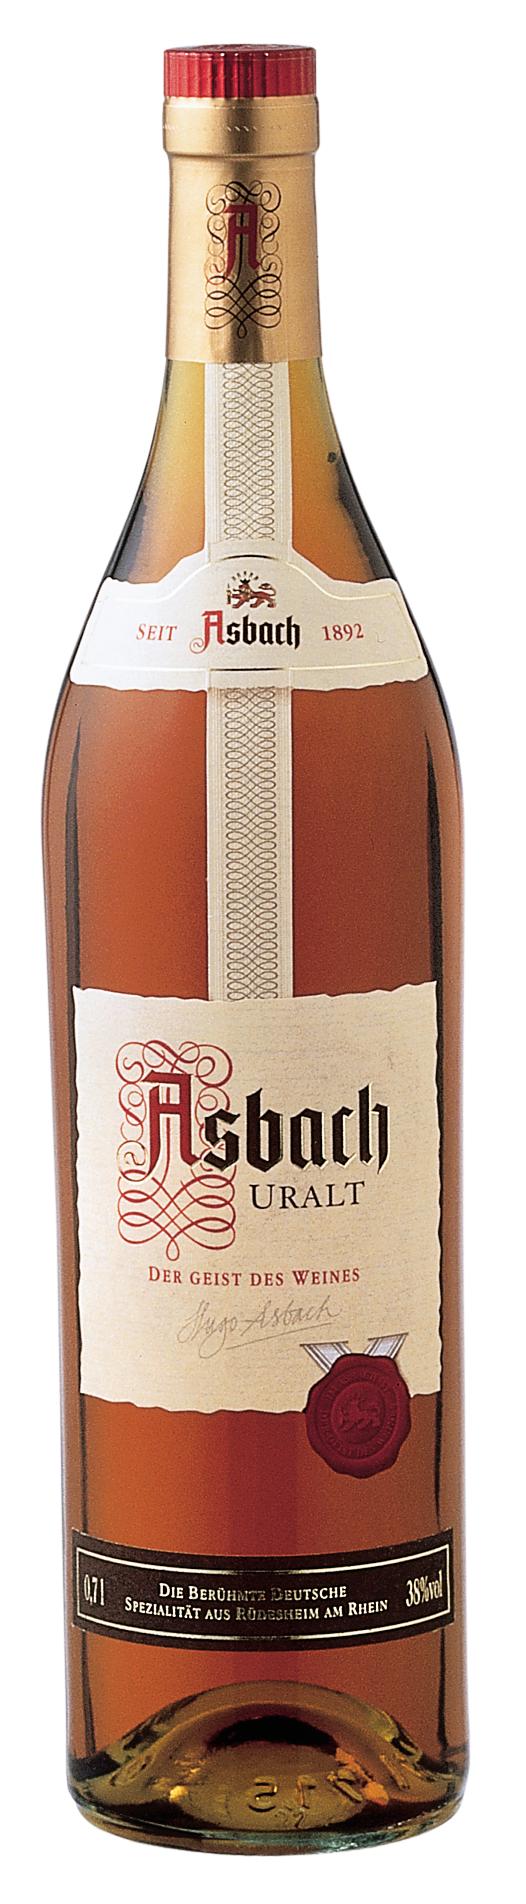 Asbach Uralt 0,7l günstig online kaufen bei Preis.de ✓ | Weinbrände